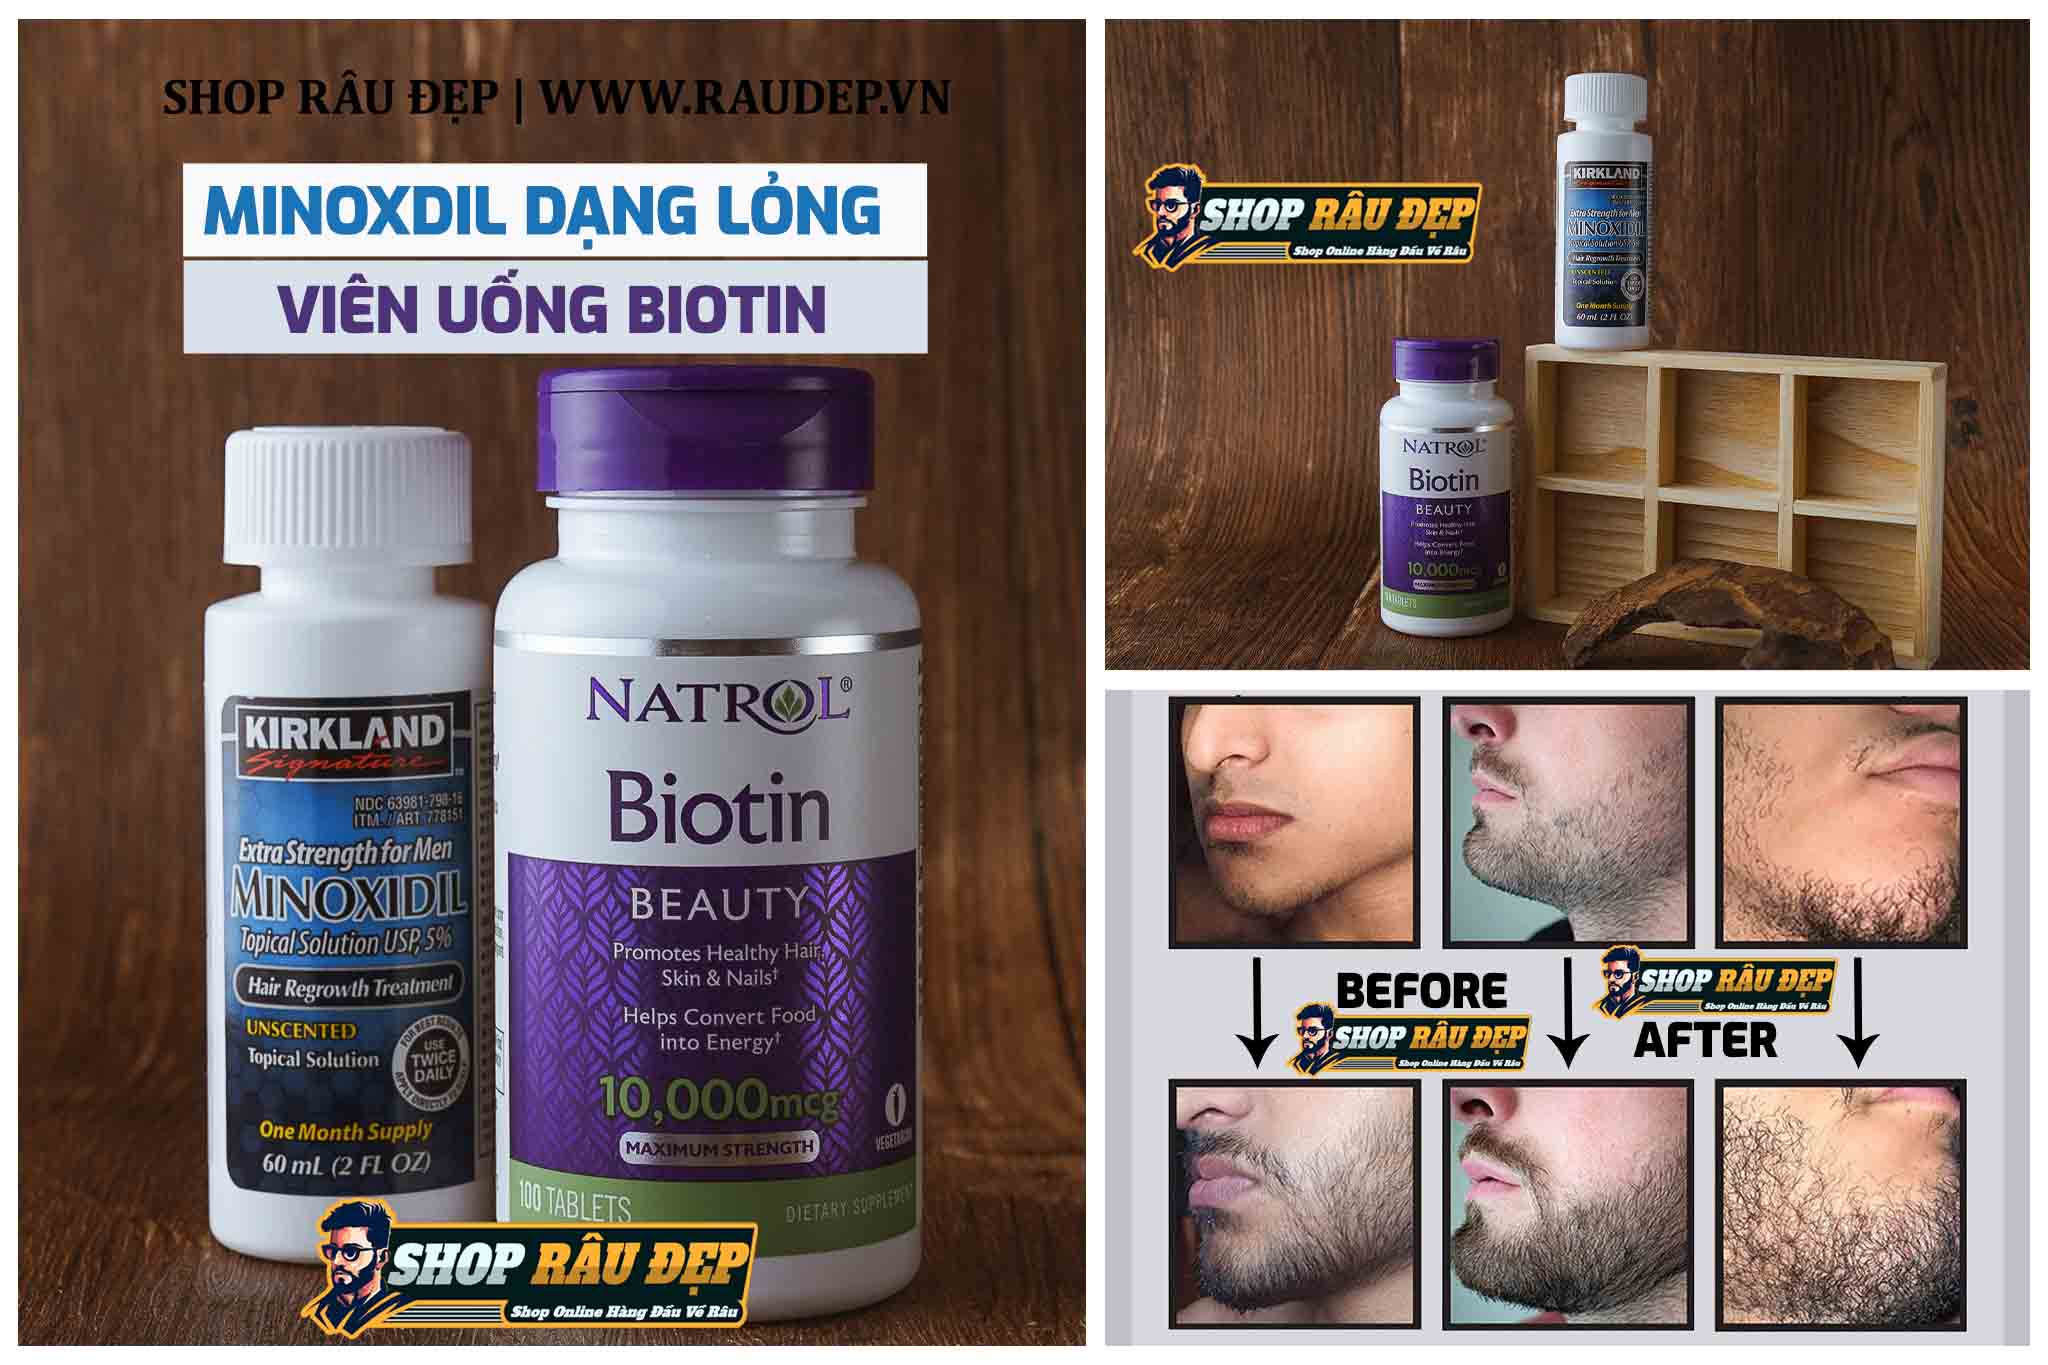 Phương pháp kích thích mọc râu dùng thuốc mọc râu Minoxidil 5% + thuốc hỗ trợ Biotin 10,000 mcg